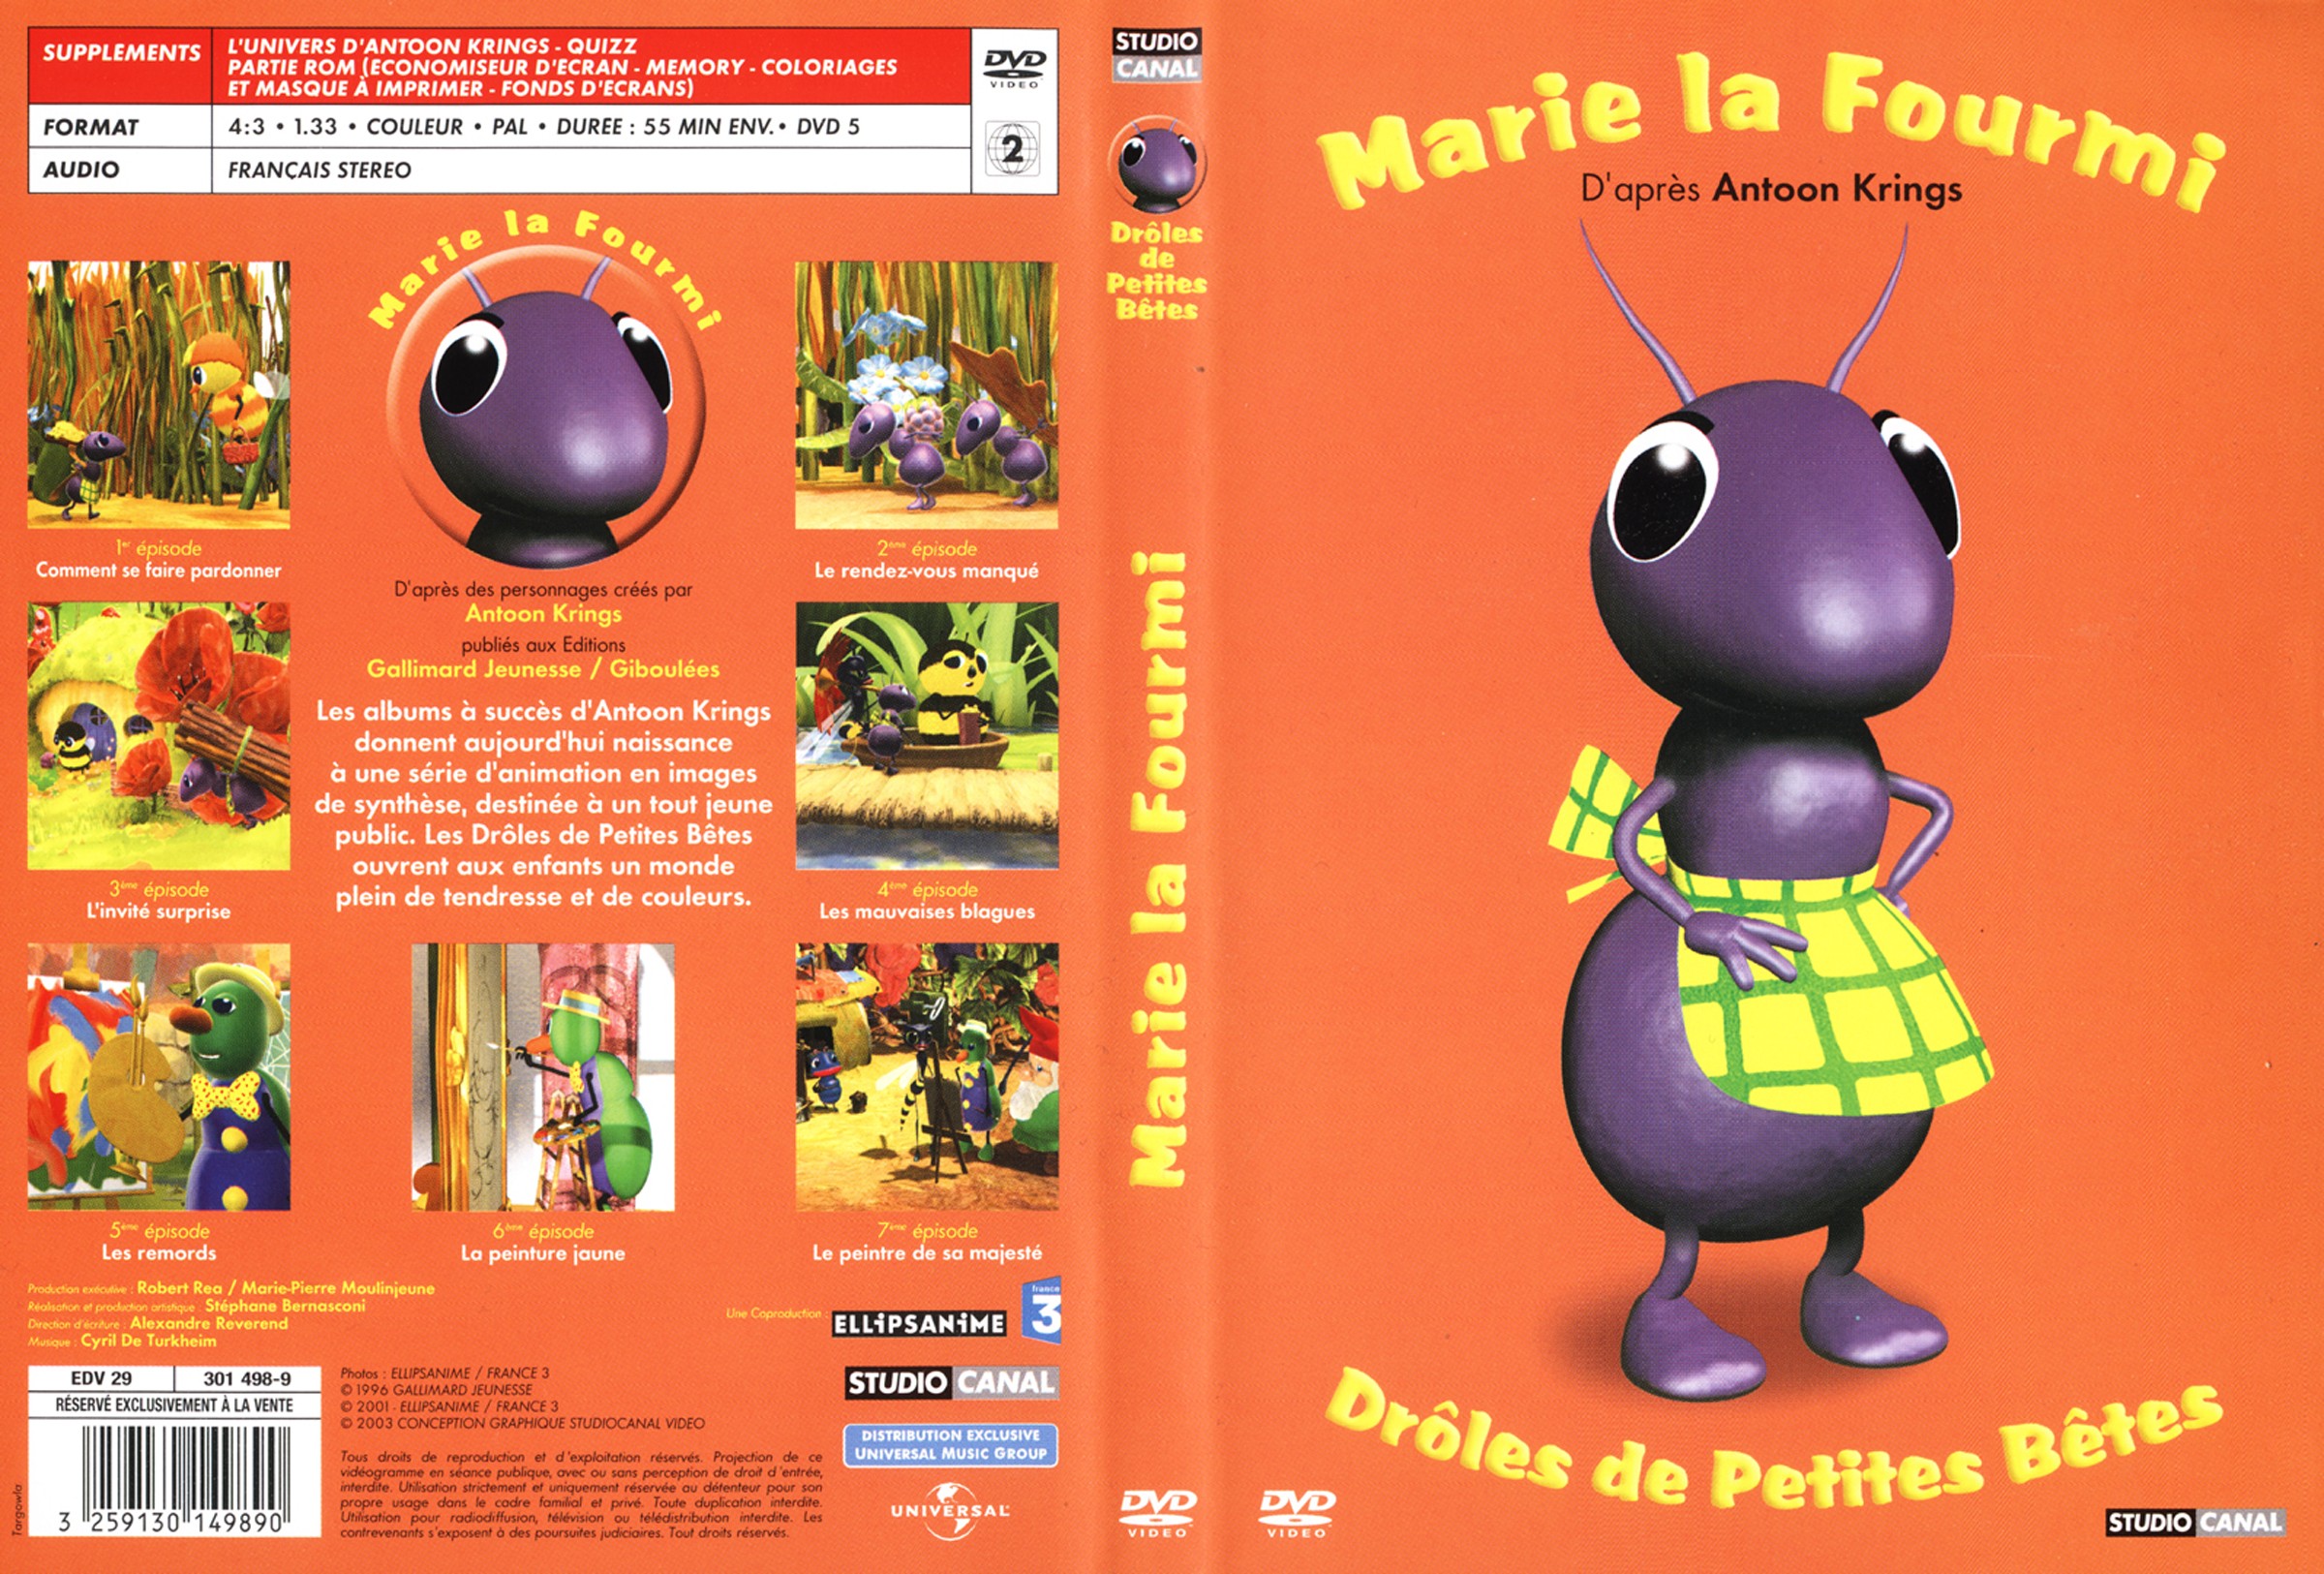 Jaquette DVD Droles de petites betes - Mrie la fourmie